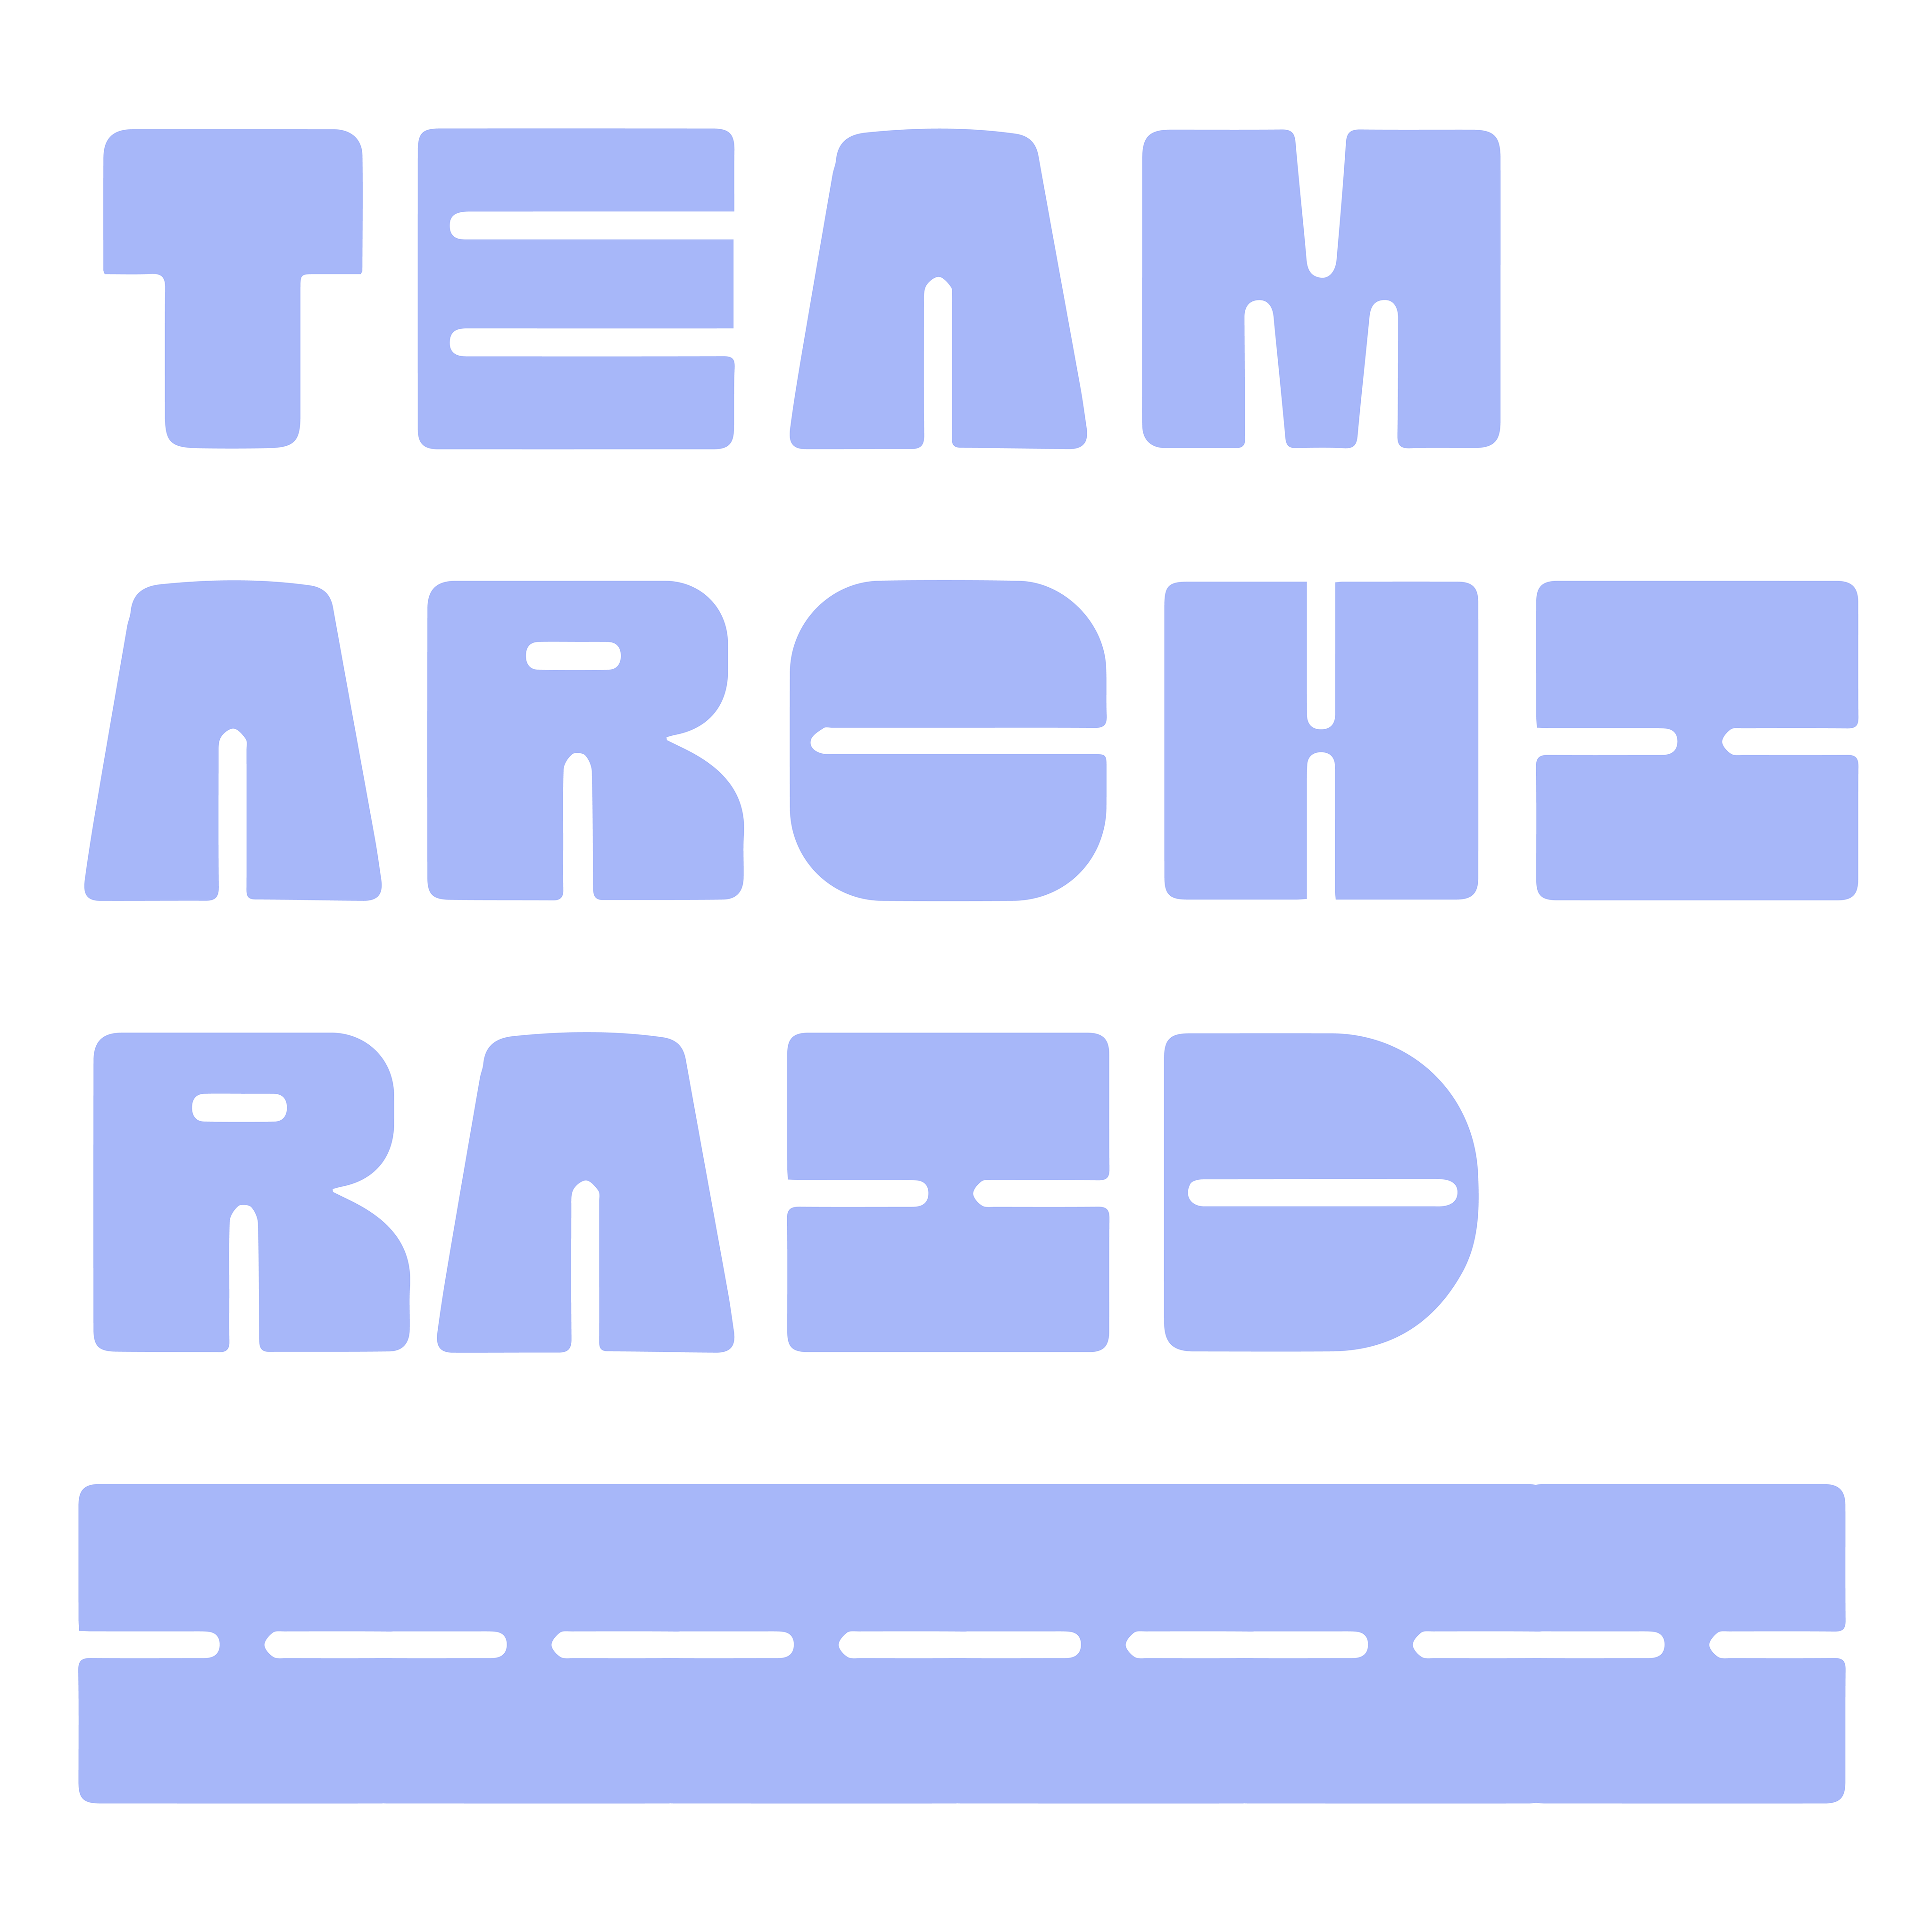 team archiraid